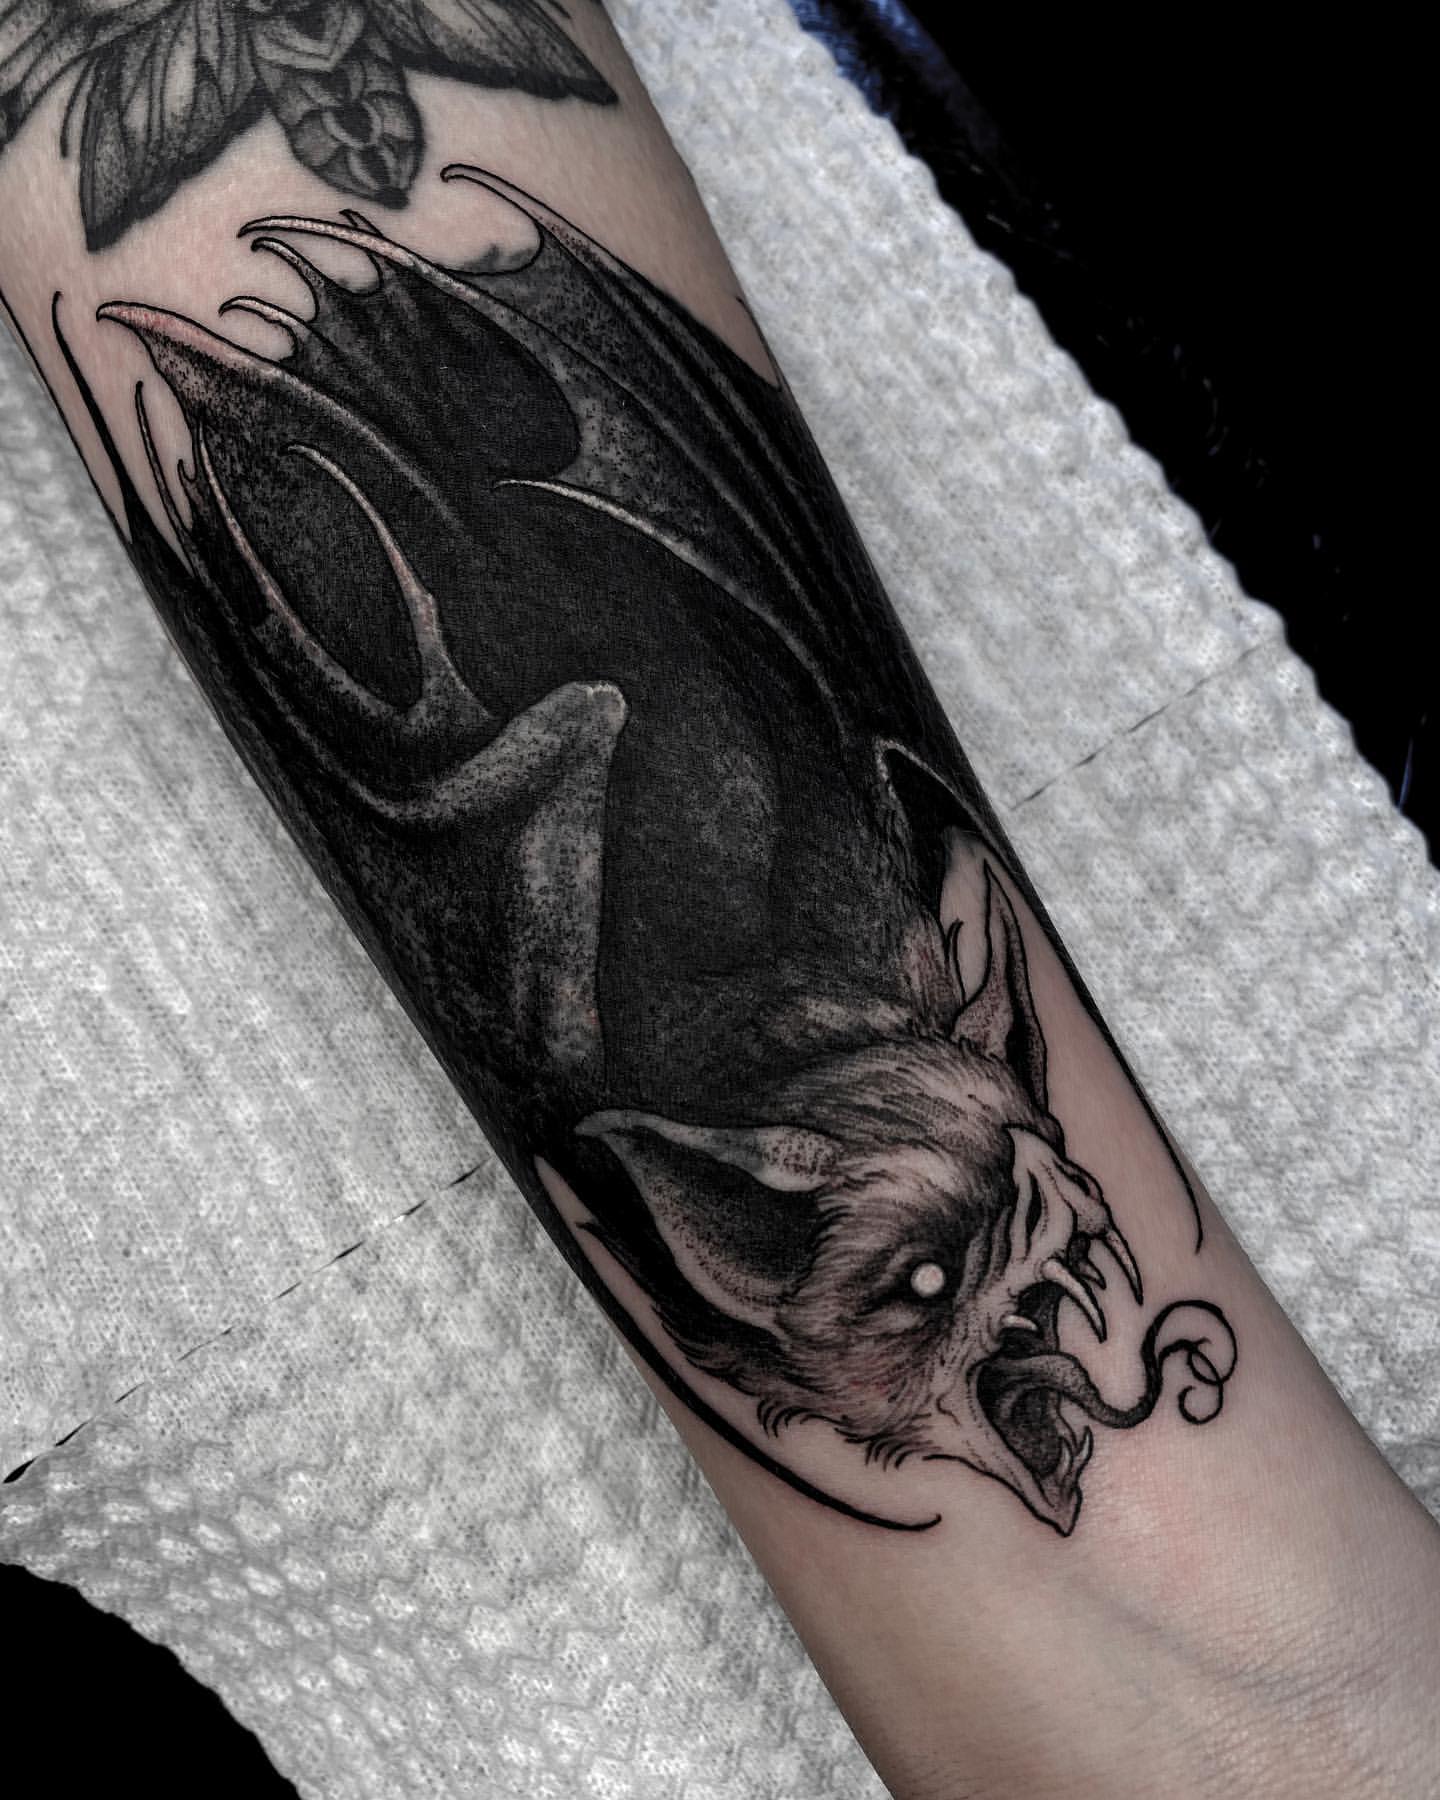 Bat Tattoo Ideas 15